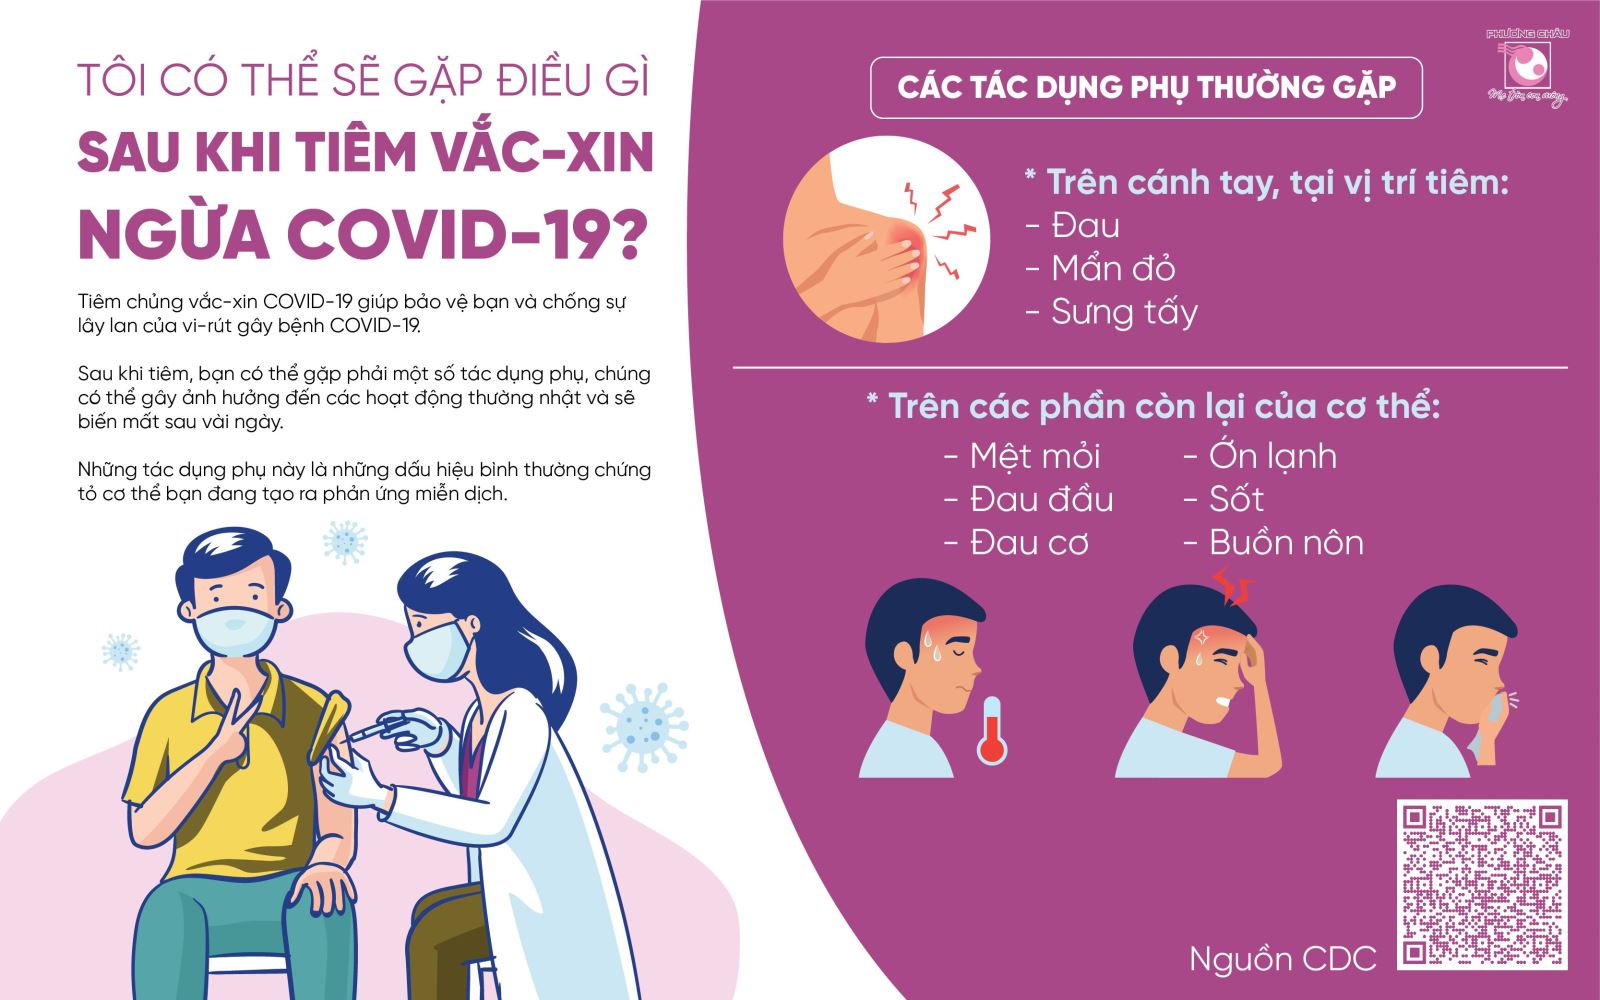  Nocebo: Hiệu ứng kỳ lạ sau khi tiêm vắc-xin COVID-19  - Ảnh 4.